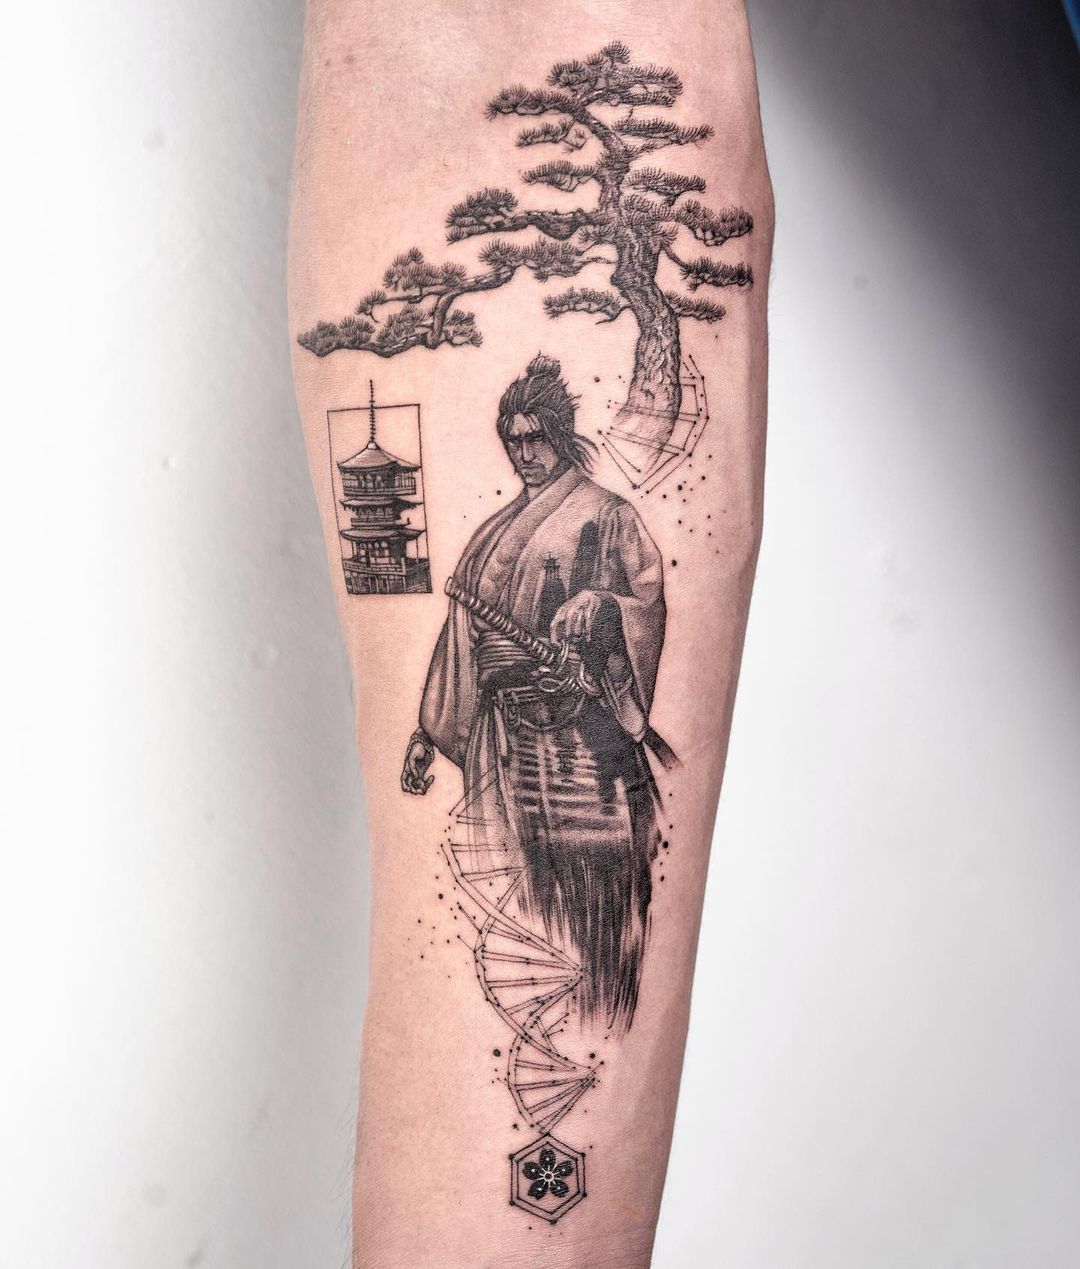 Samurai tattoo | Samurai tattoo, Tattoos, Samurai mask tattoo